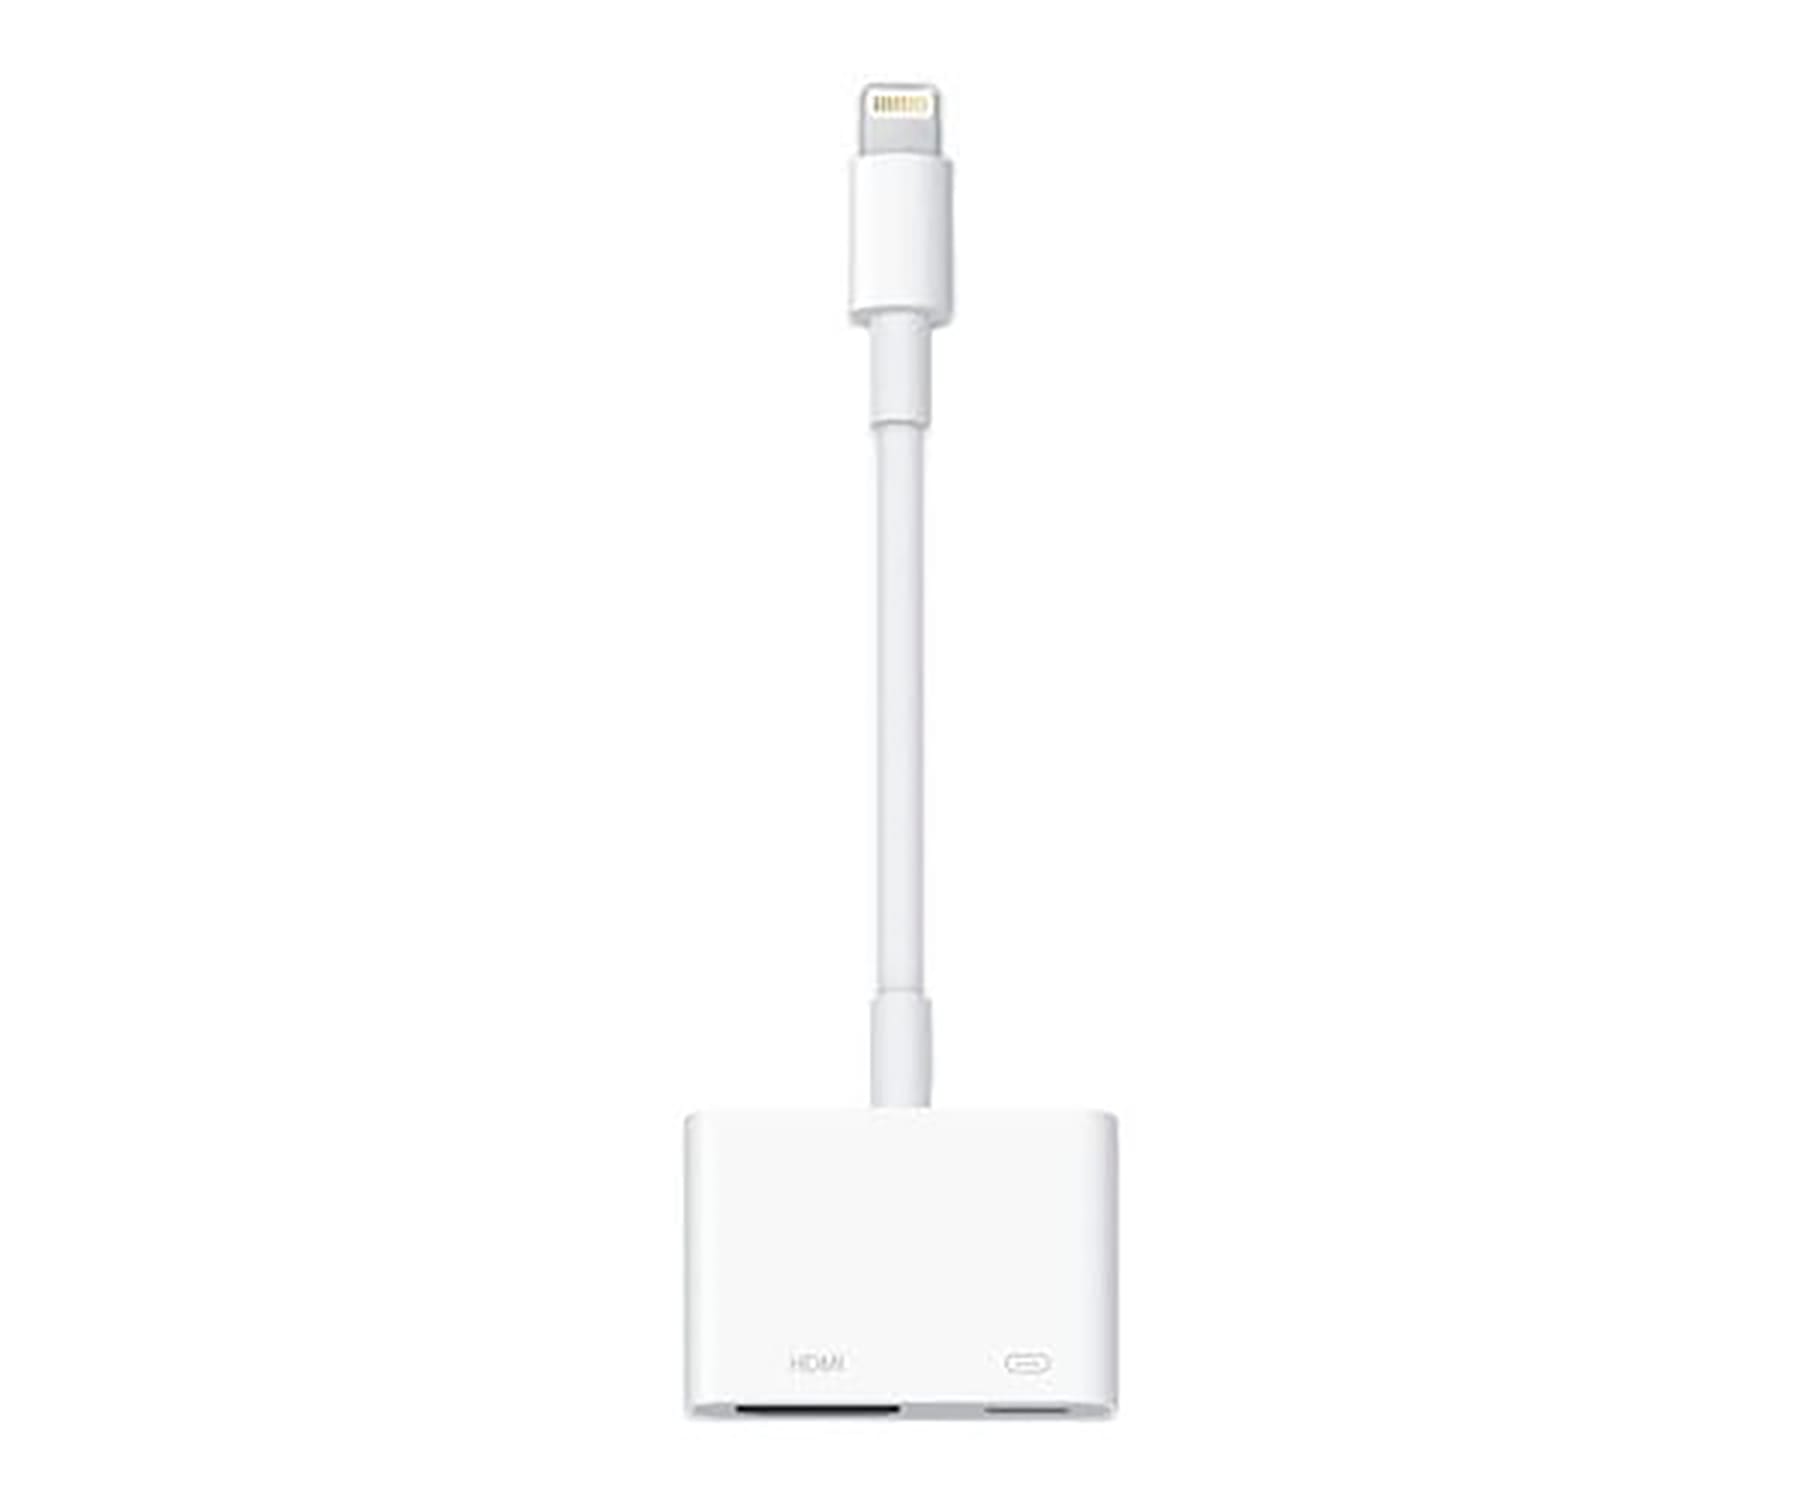 Apple Lightning Digital AV Adapter / Cable adaptador Lightning a HDMI y USB-C